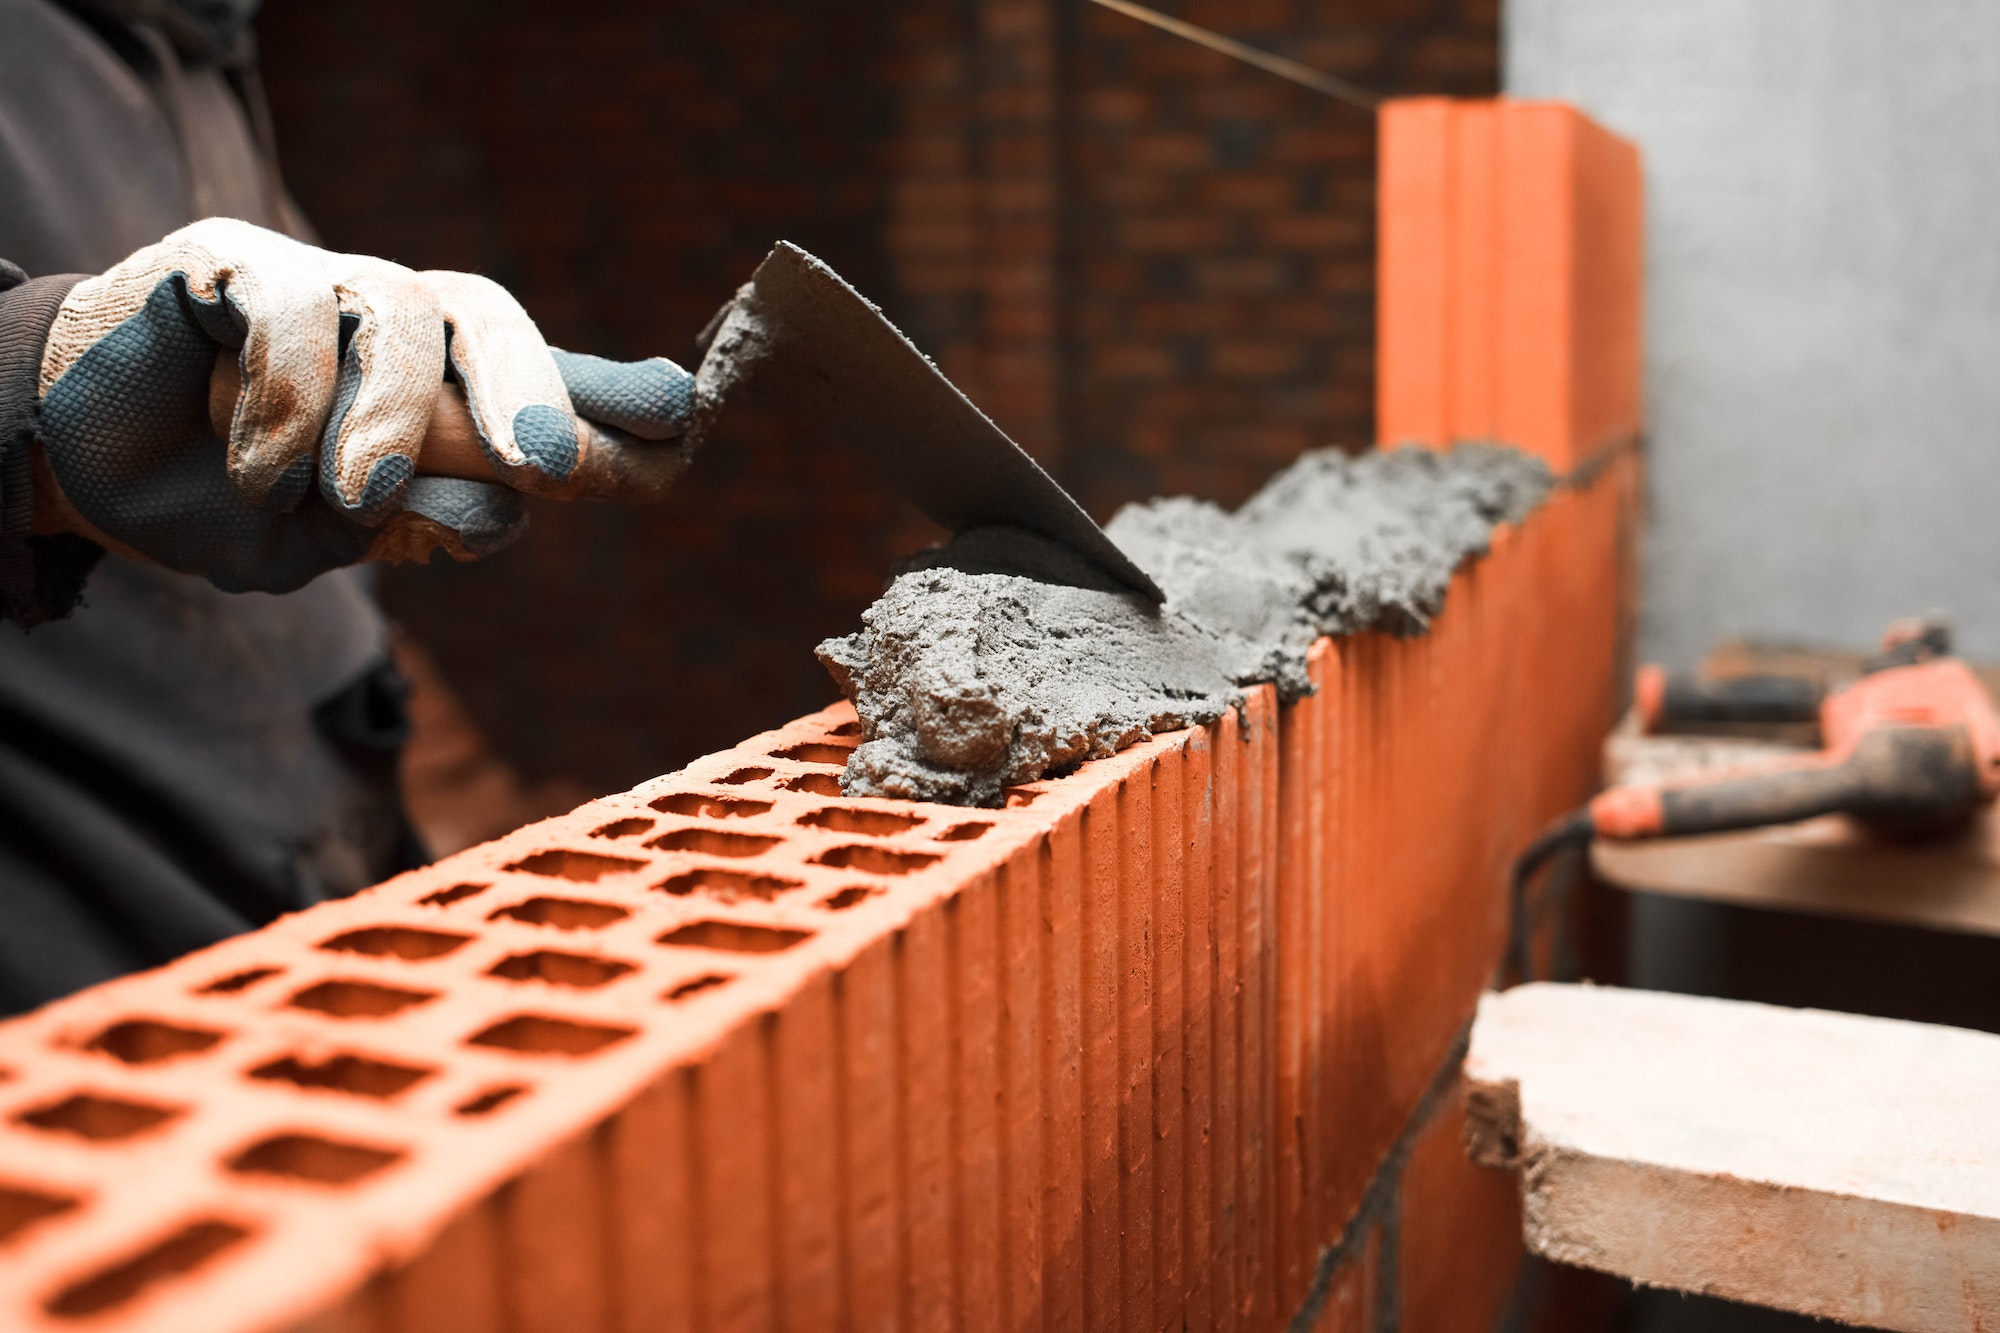 Bricklayer puts bricks to make a wall